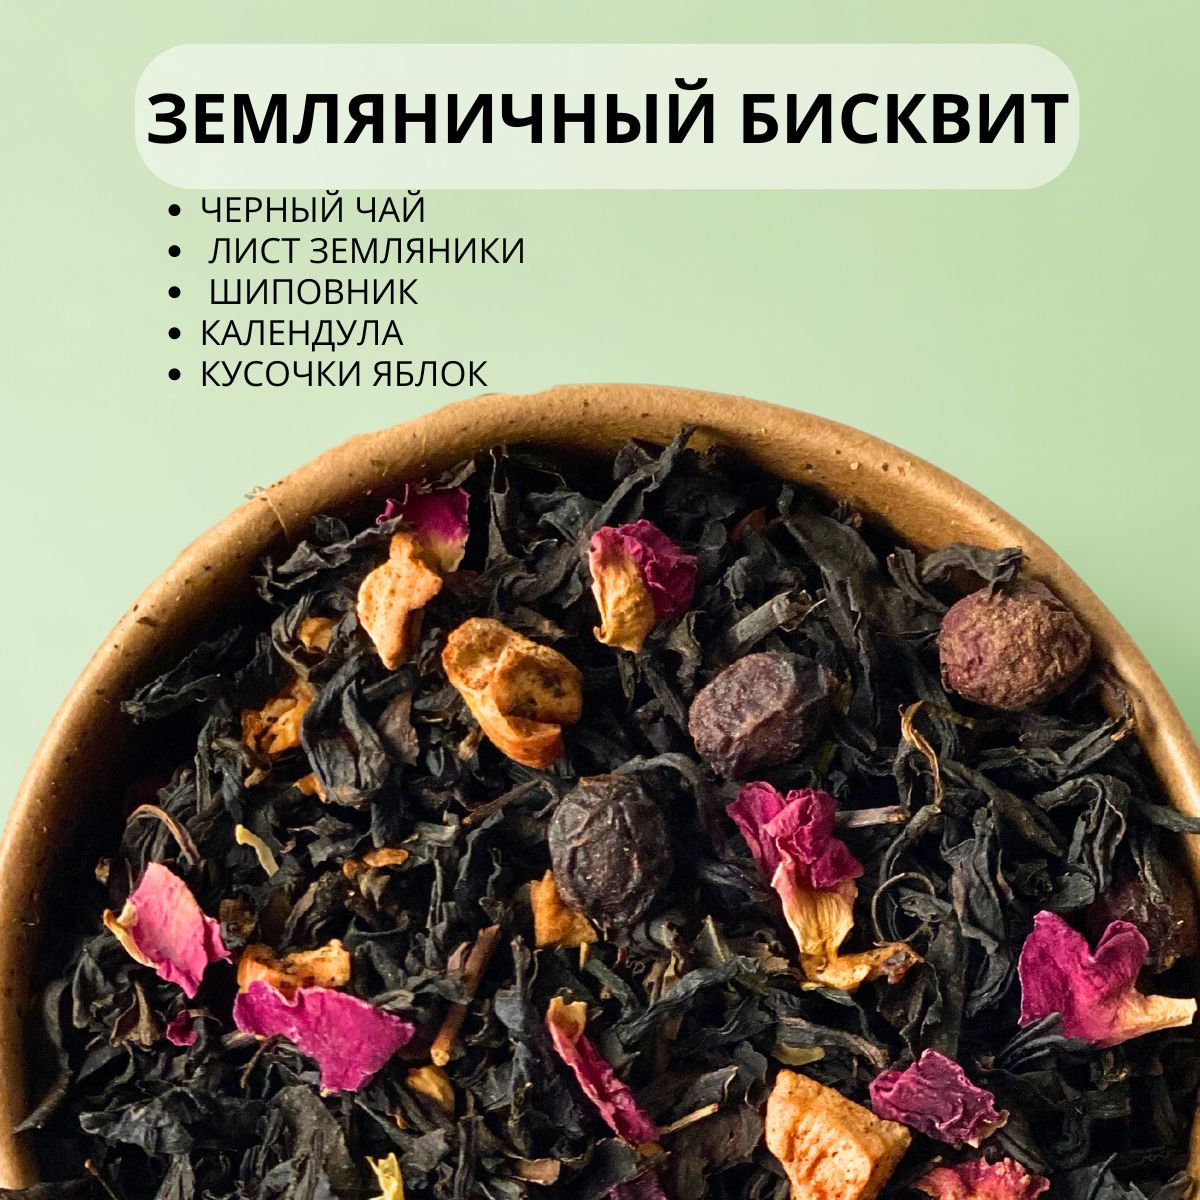 Черный чай с душистыми травами, можжевельником, боярышником и клюквой, листьями брусники и оливы, мятой и васильком. Согревающий и расслабляющий напиток, наполняющий дом вкусным ароматом.